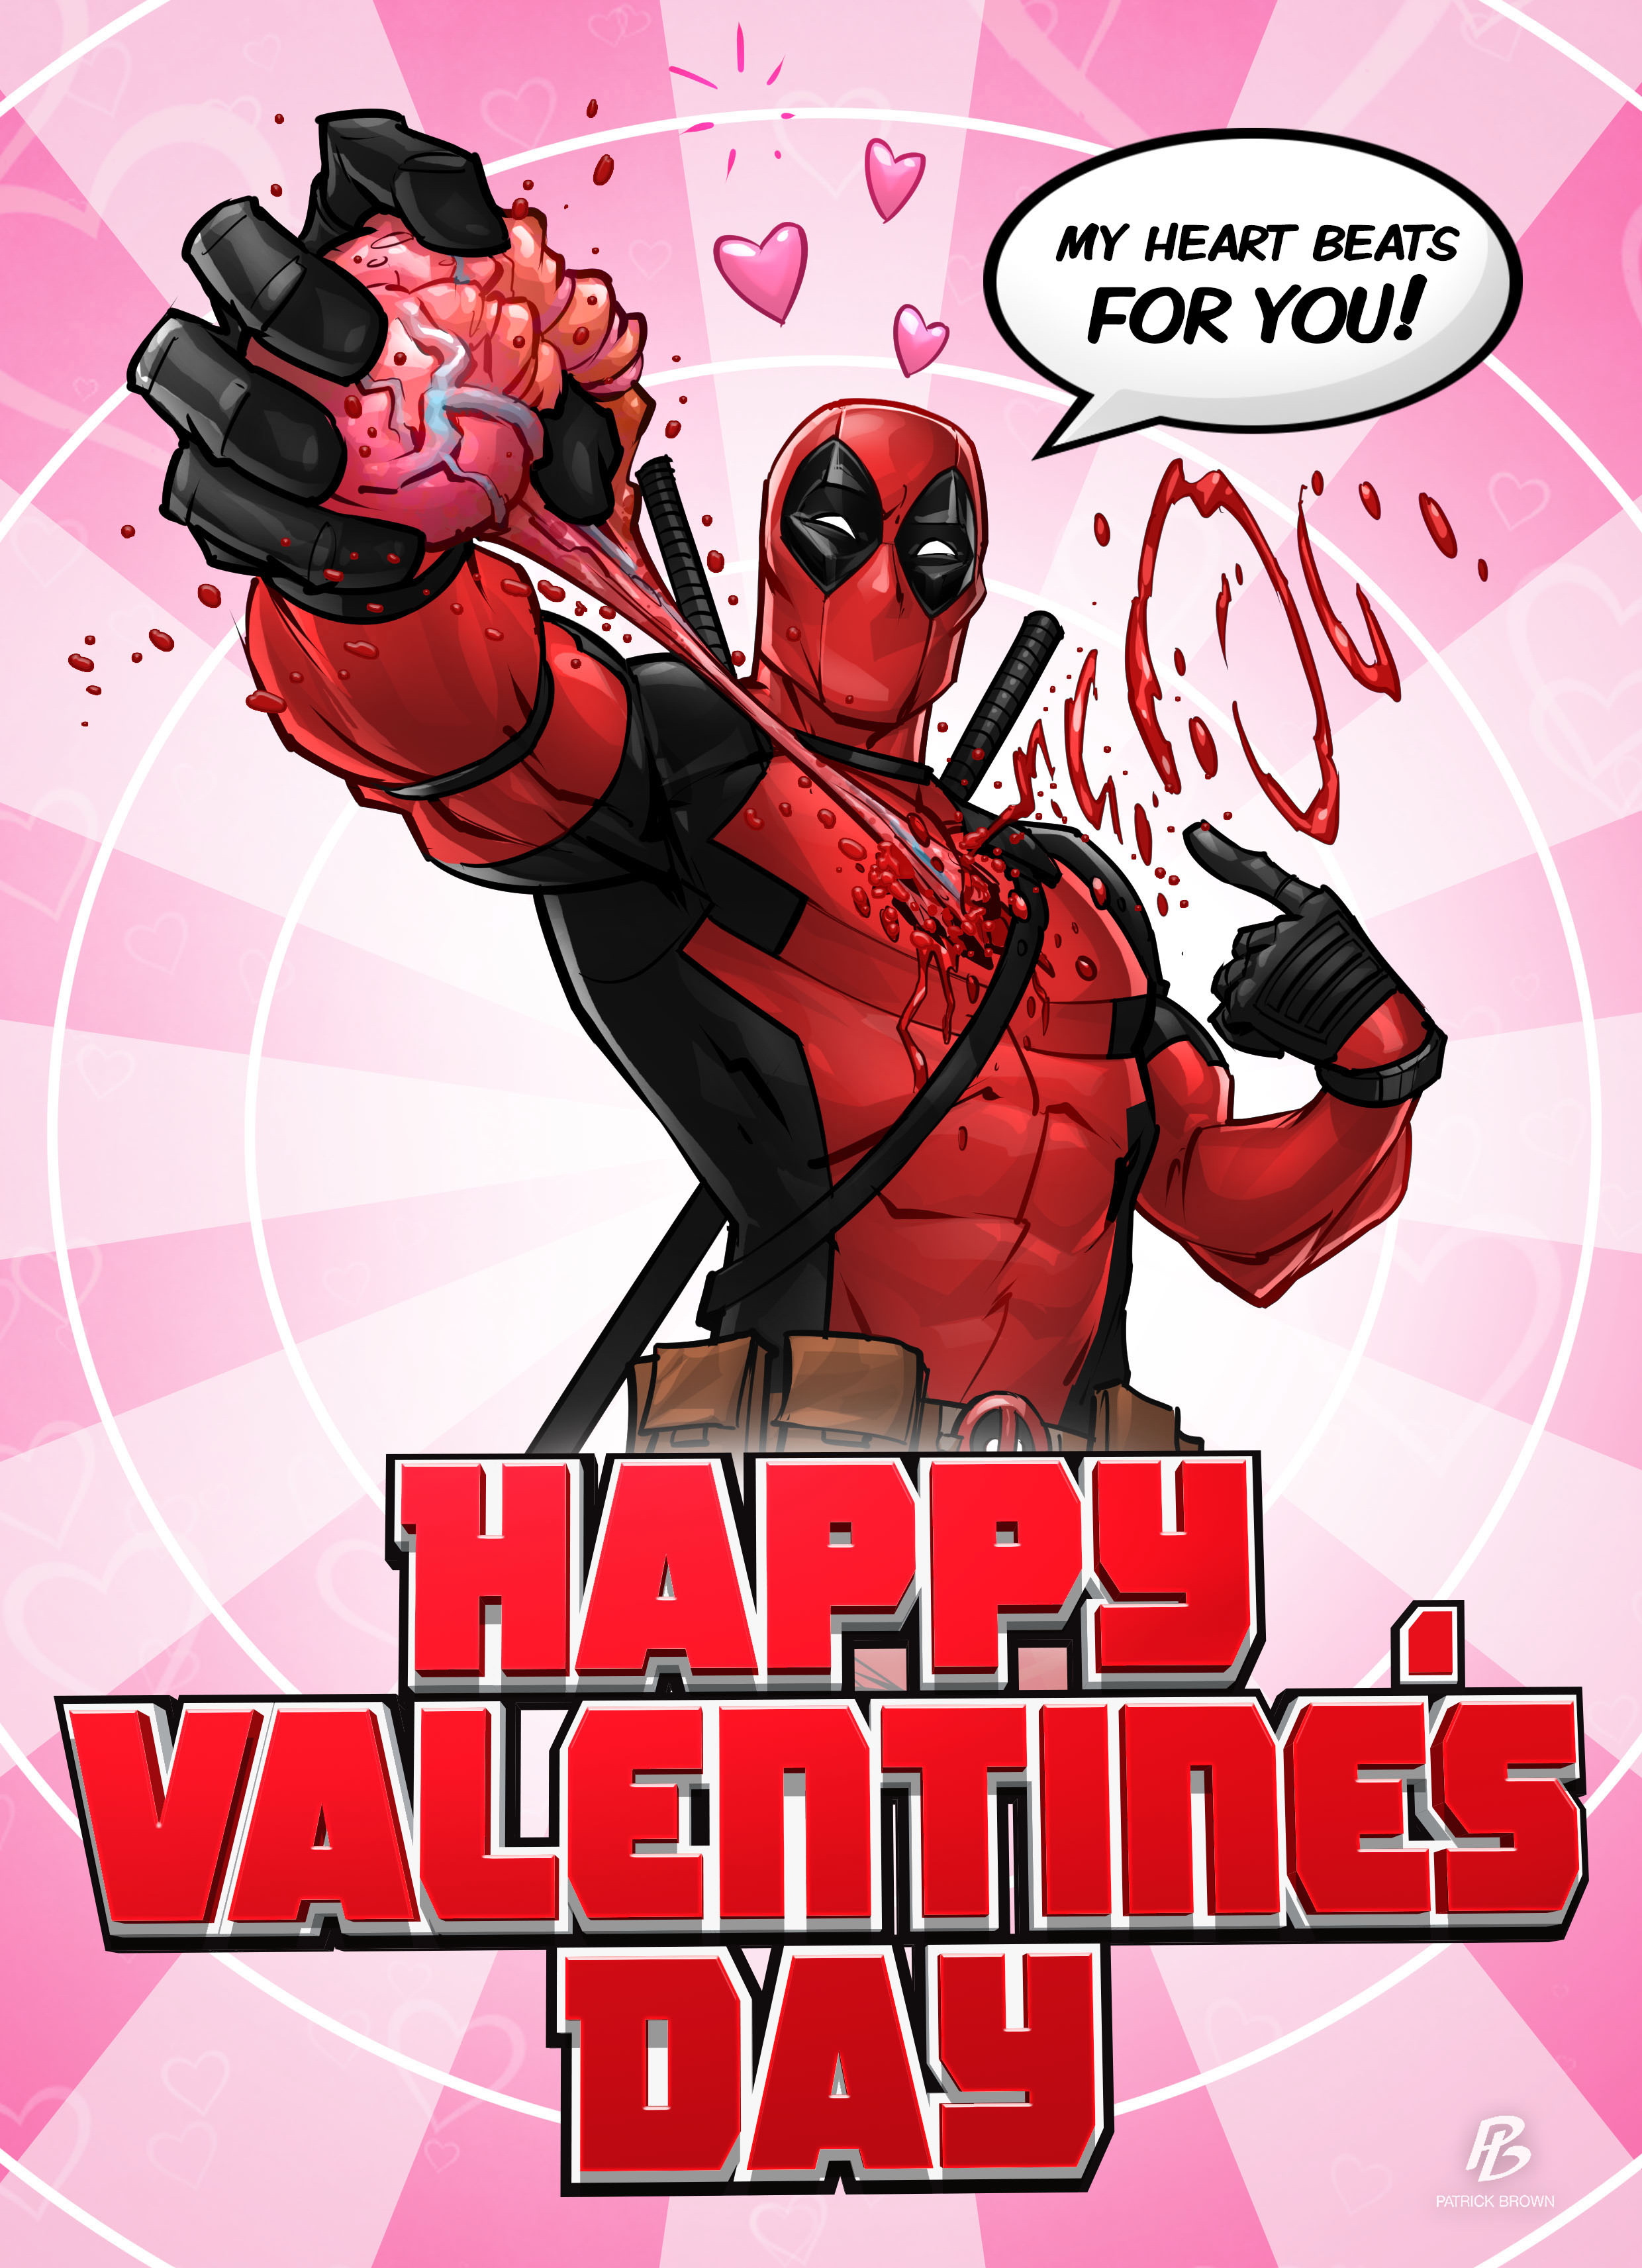 https://s1.1zoom.me/big3/338/Heroes_comics_Deadpool_hero_Valentine's_Day_Heart_516238_2480x3425.jpg